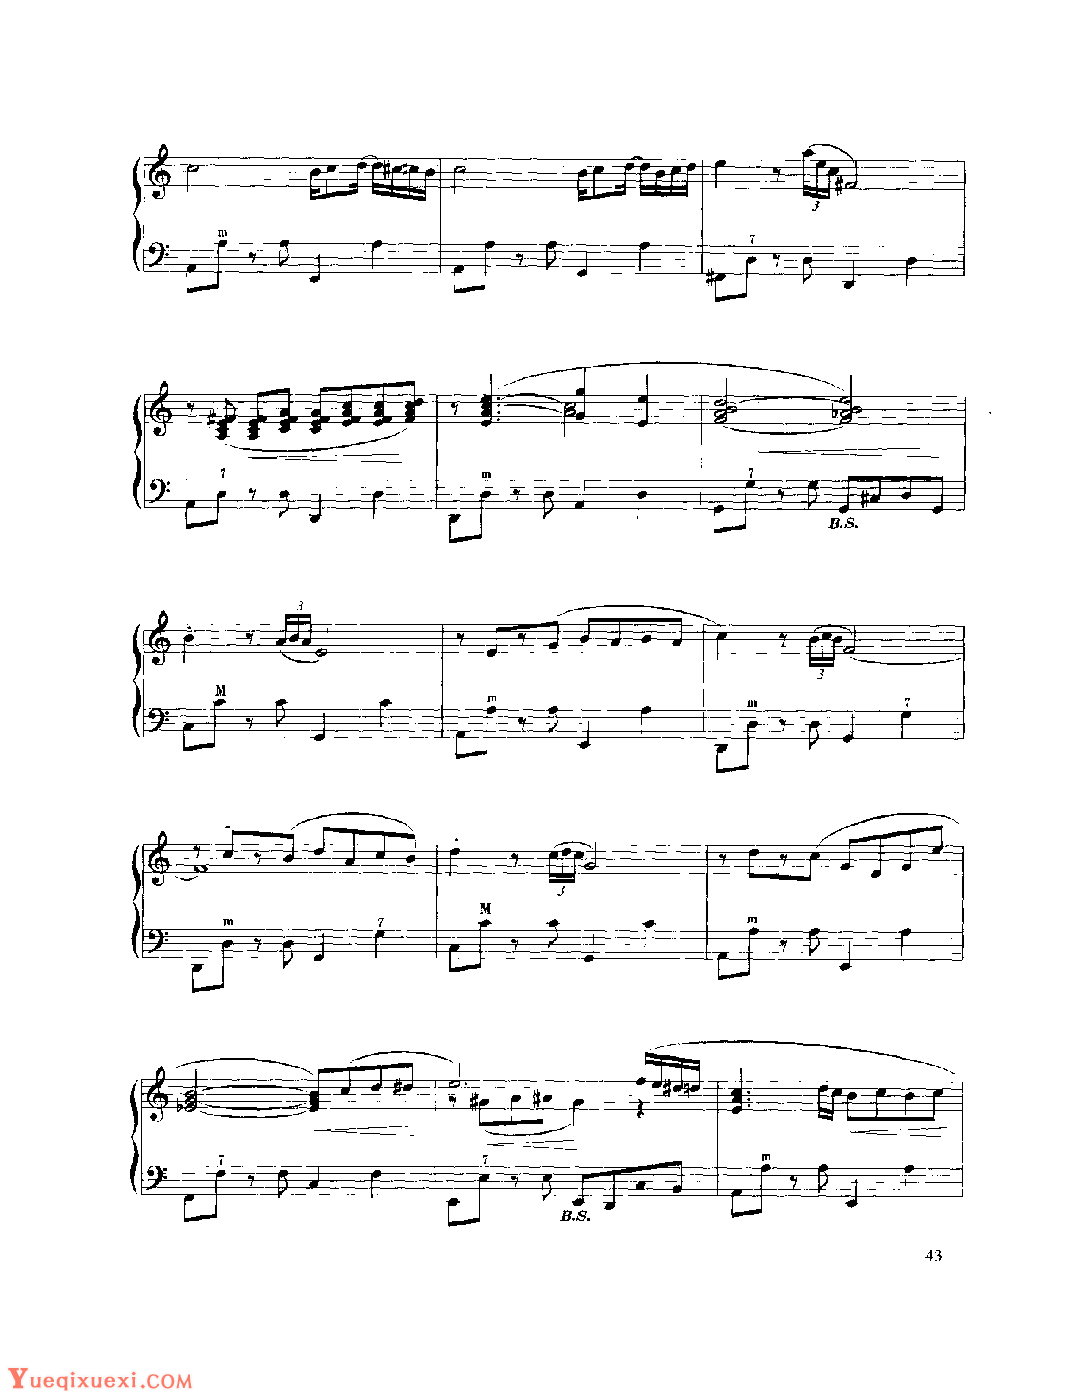 现代手风琴流行乐曲《感觉》沃麦尔·贝尔特拉米曲